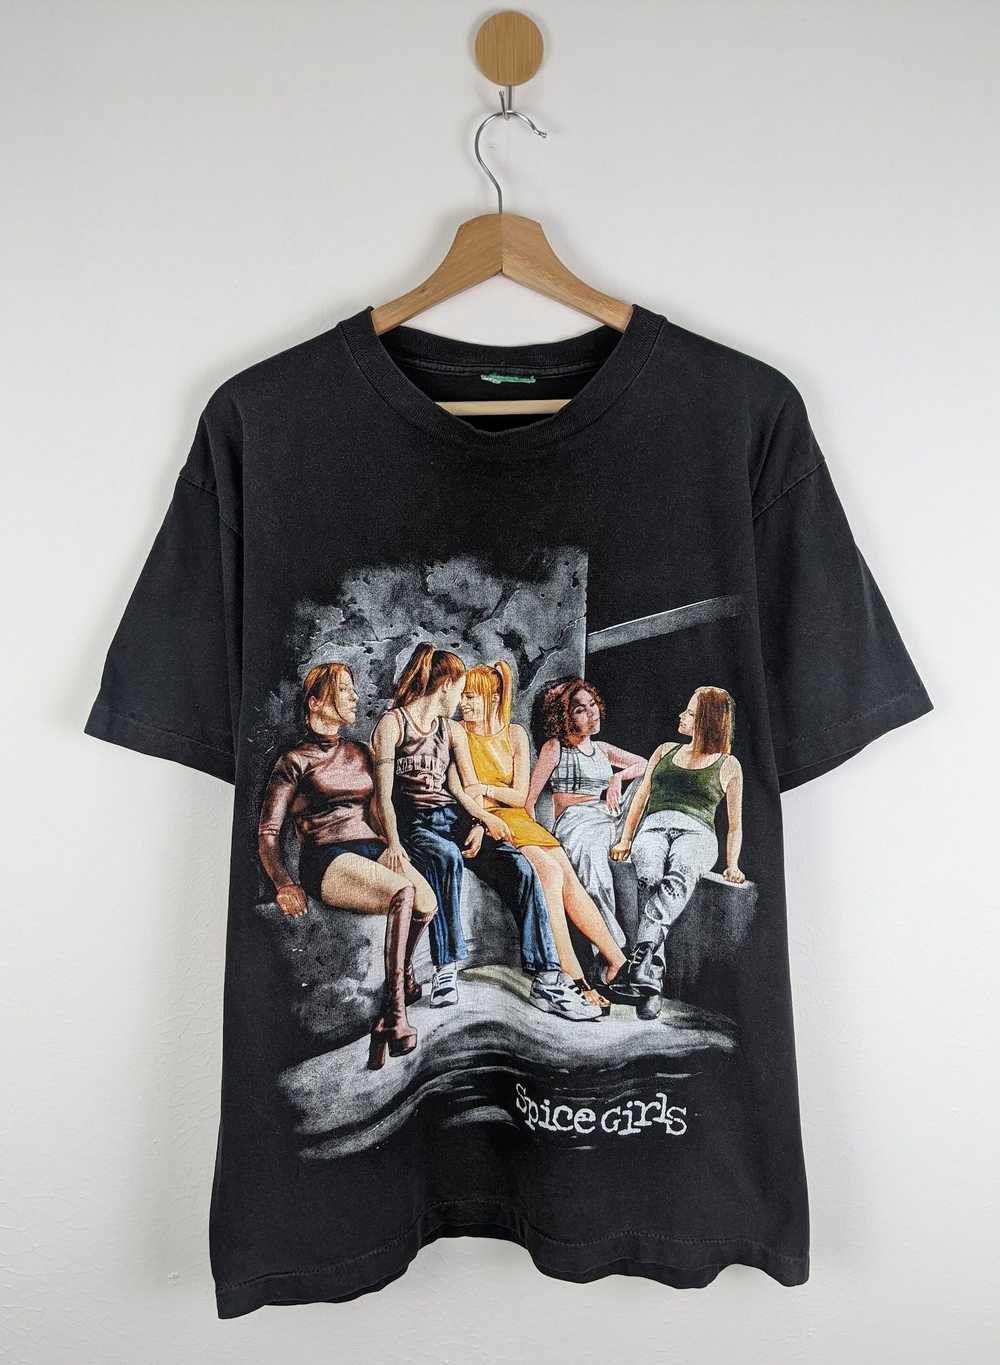 Vintage Vintage Spice Girls bootleg 90s shirt - image 1